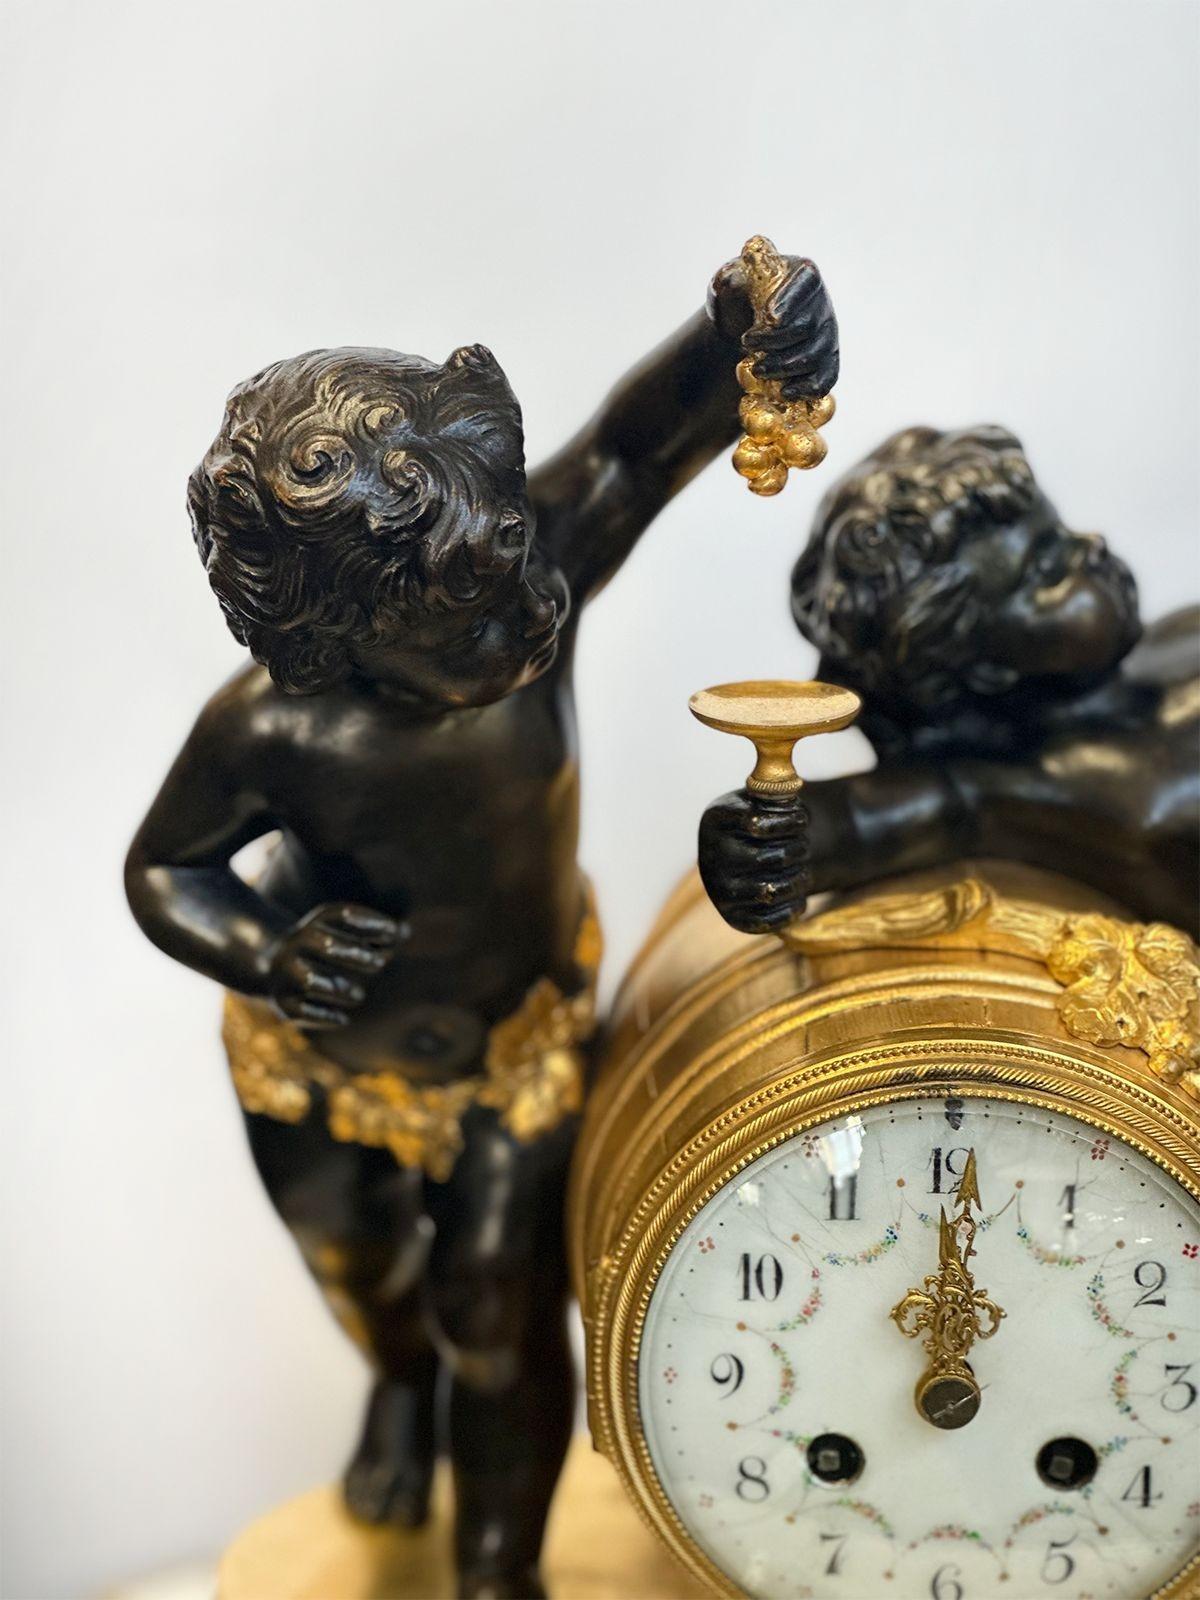 Schöne Bronze-Kaminuhr mit reicher Bronze in Ormolu und unterstützt von einem Marmorsockel; hergestellt in Frankreich im frühen 20. Jahrhundert. Die Uhr zeigt zwei Putten, von denen eine Trauben und die andere ein Schälchen hält.
Abmessungen:
15 